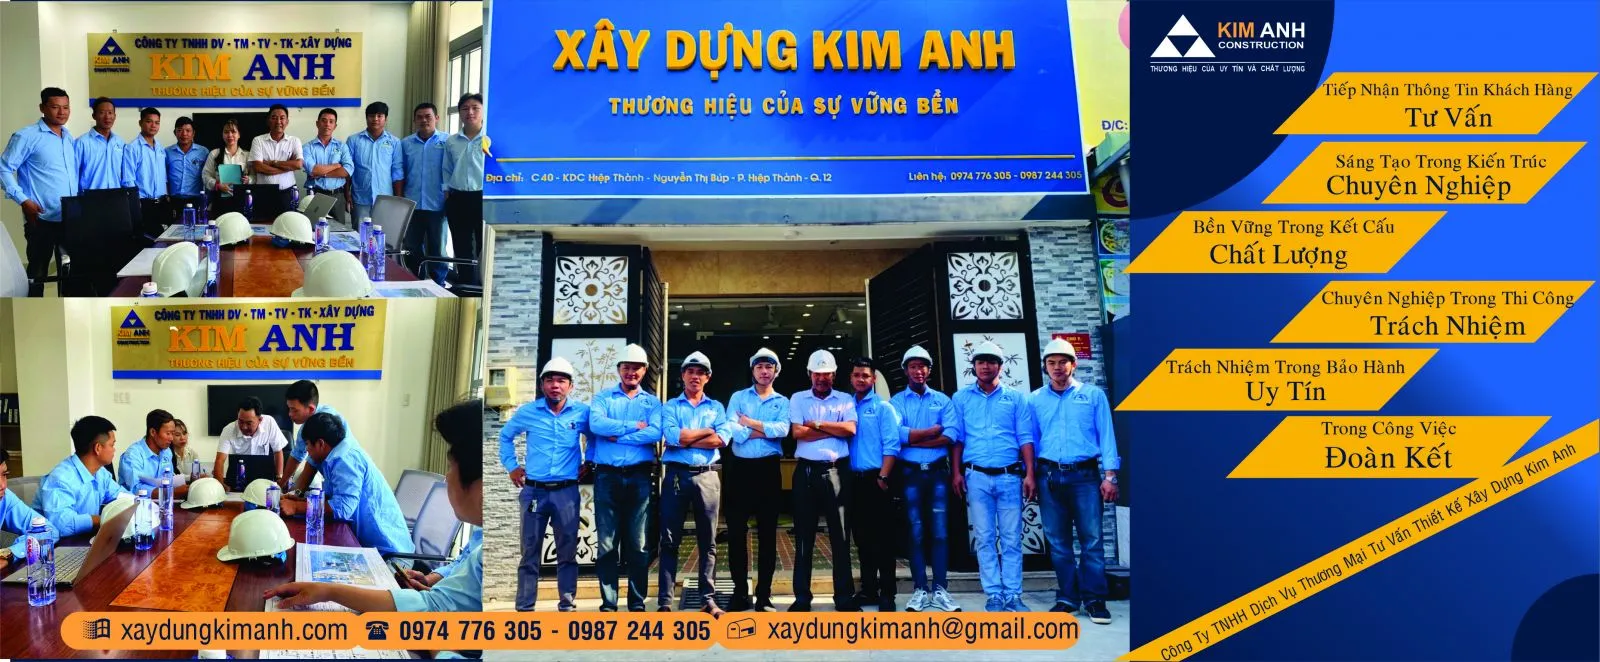 Xây Dựng Kim Anh: Công ty xây dựng nhà trọn gói Quận 5